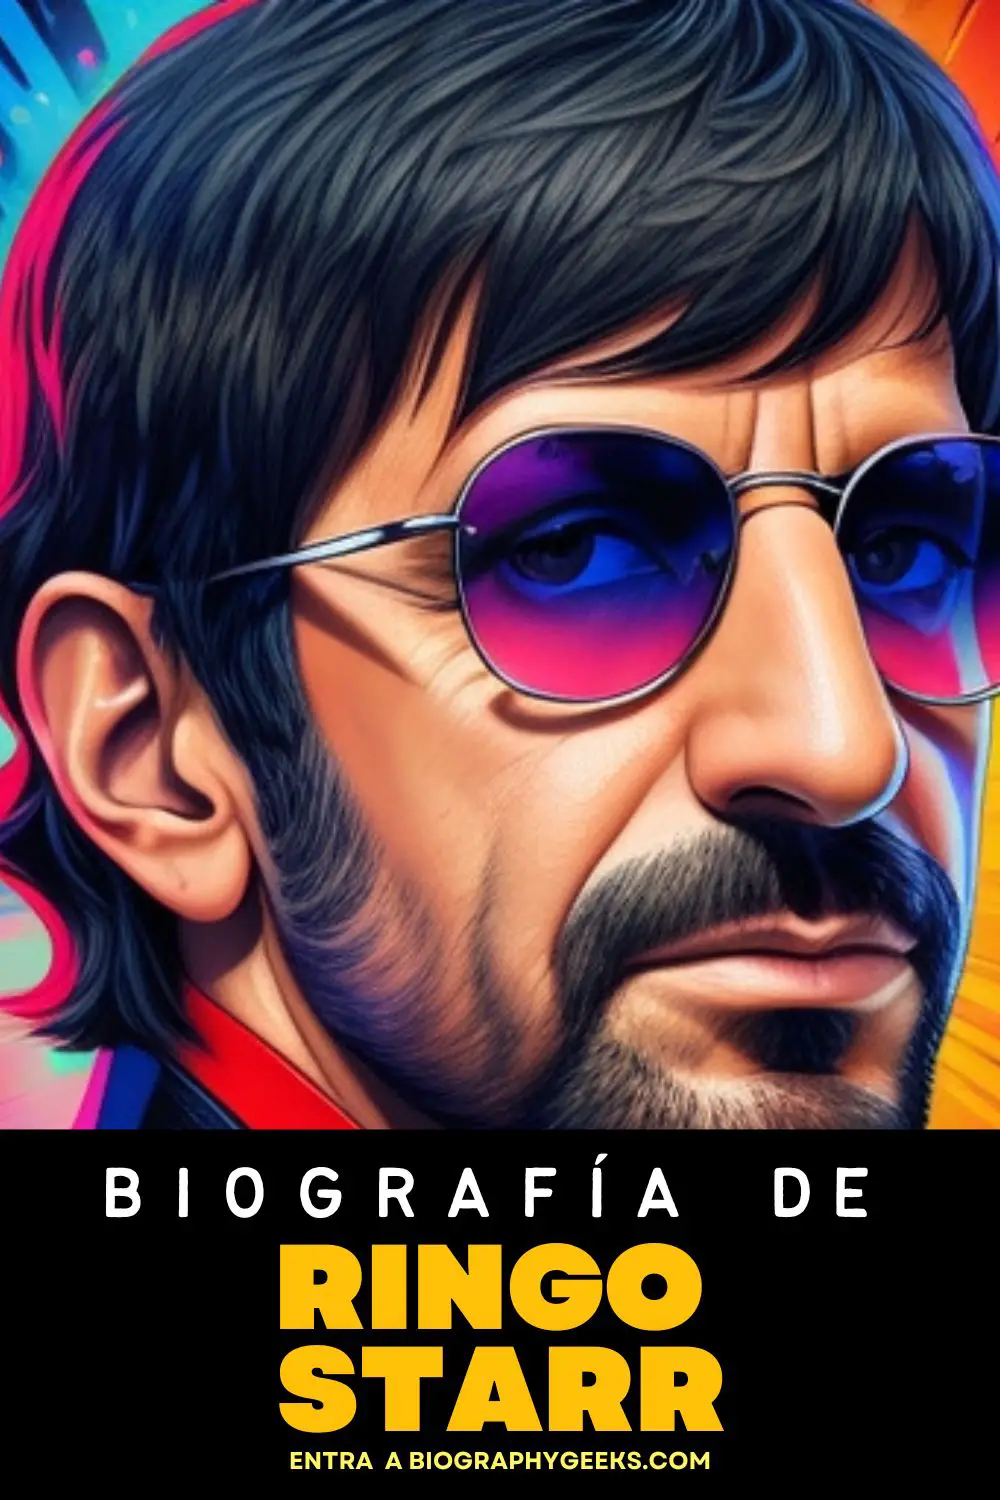 Biografia de Ringo Starr - Conoce mas sobre la vida y carrera del famoso integrante de los Beatles